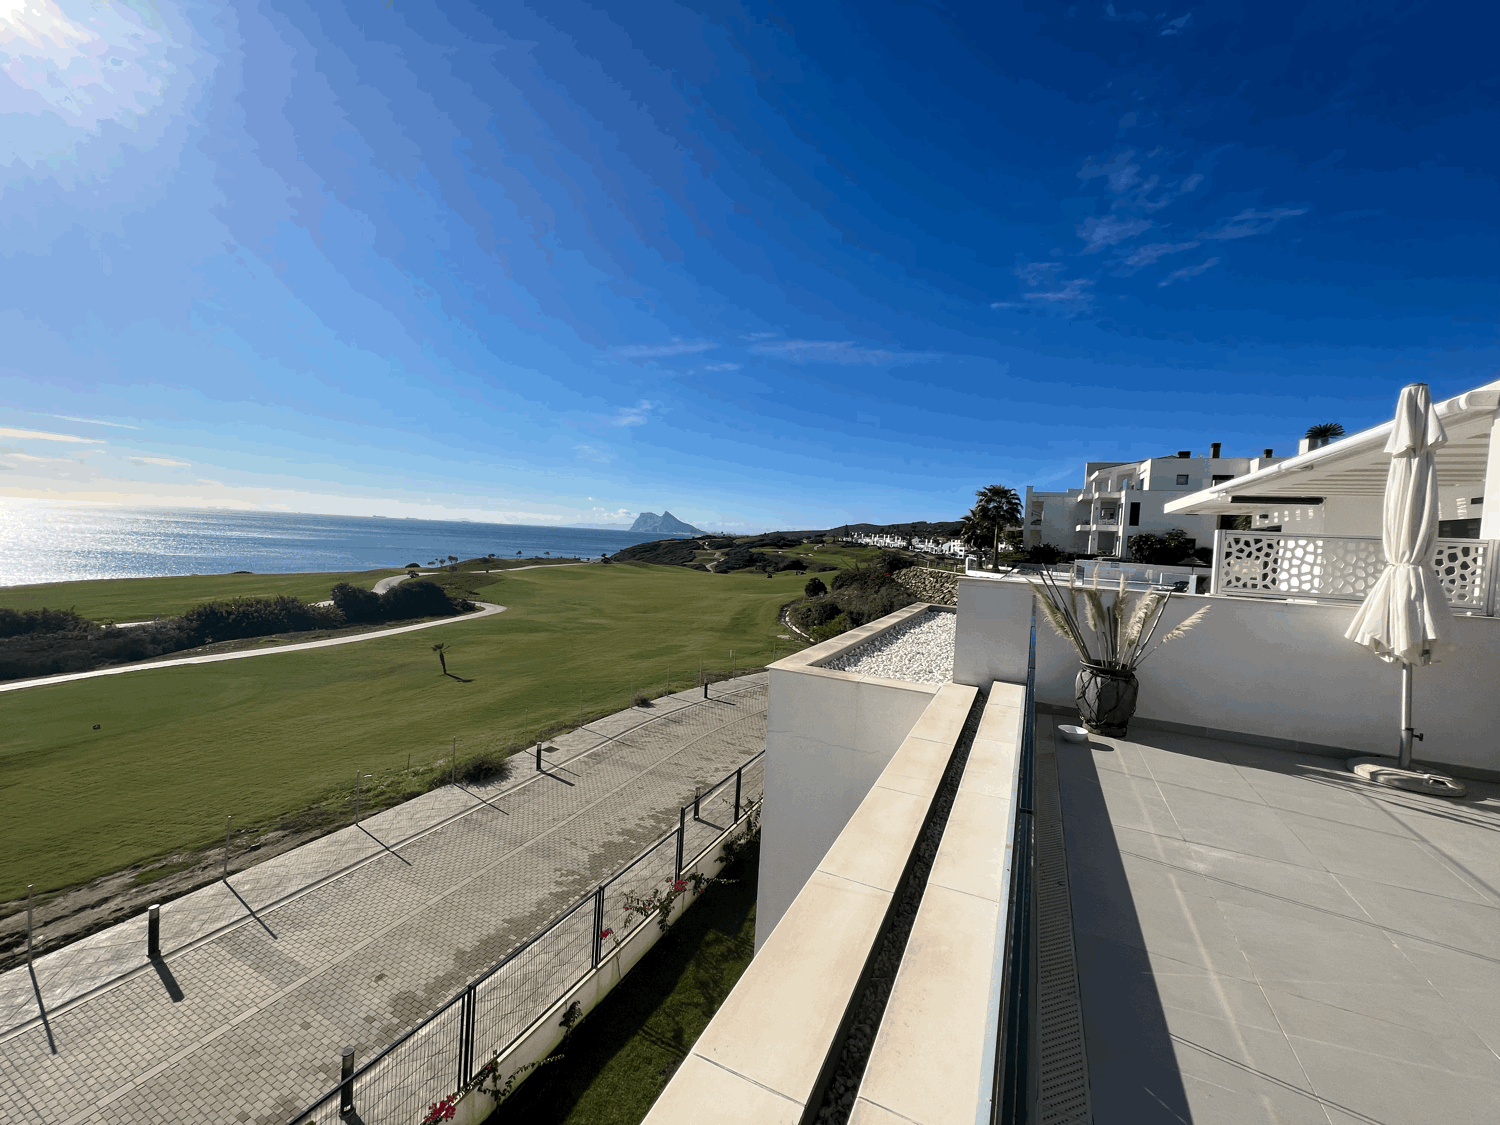 Sensacional ático con fabulosas vistas panorámicas al mar , Gibraltar y Faro Carboneras